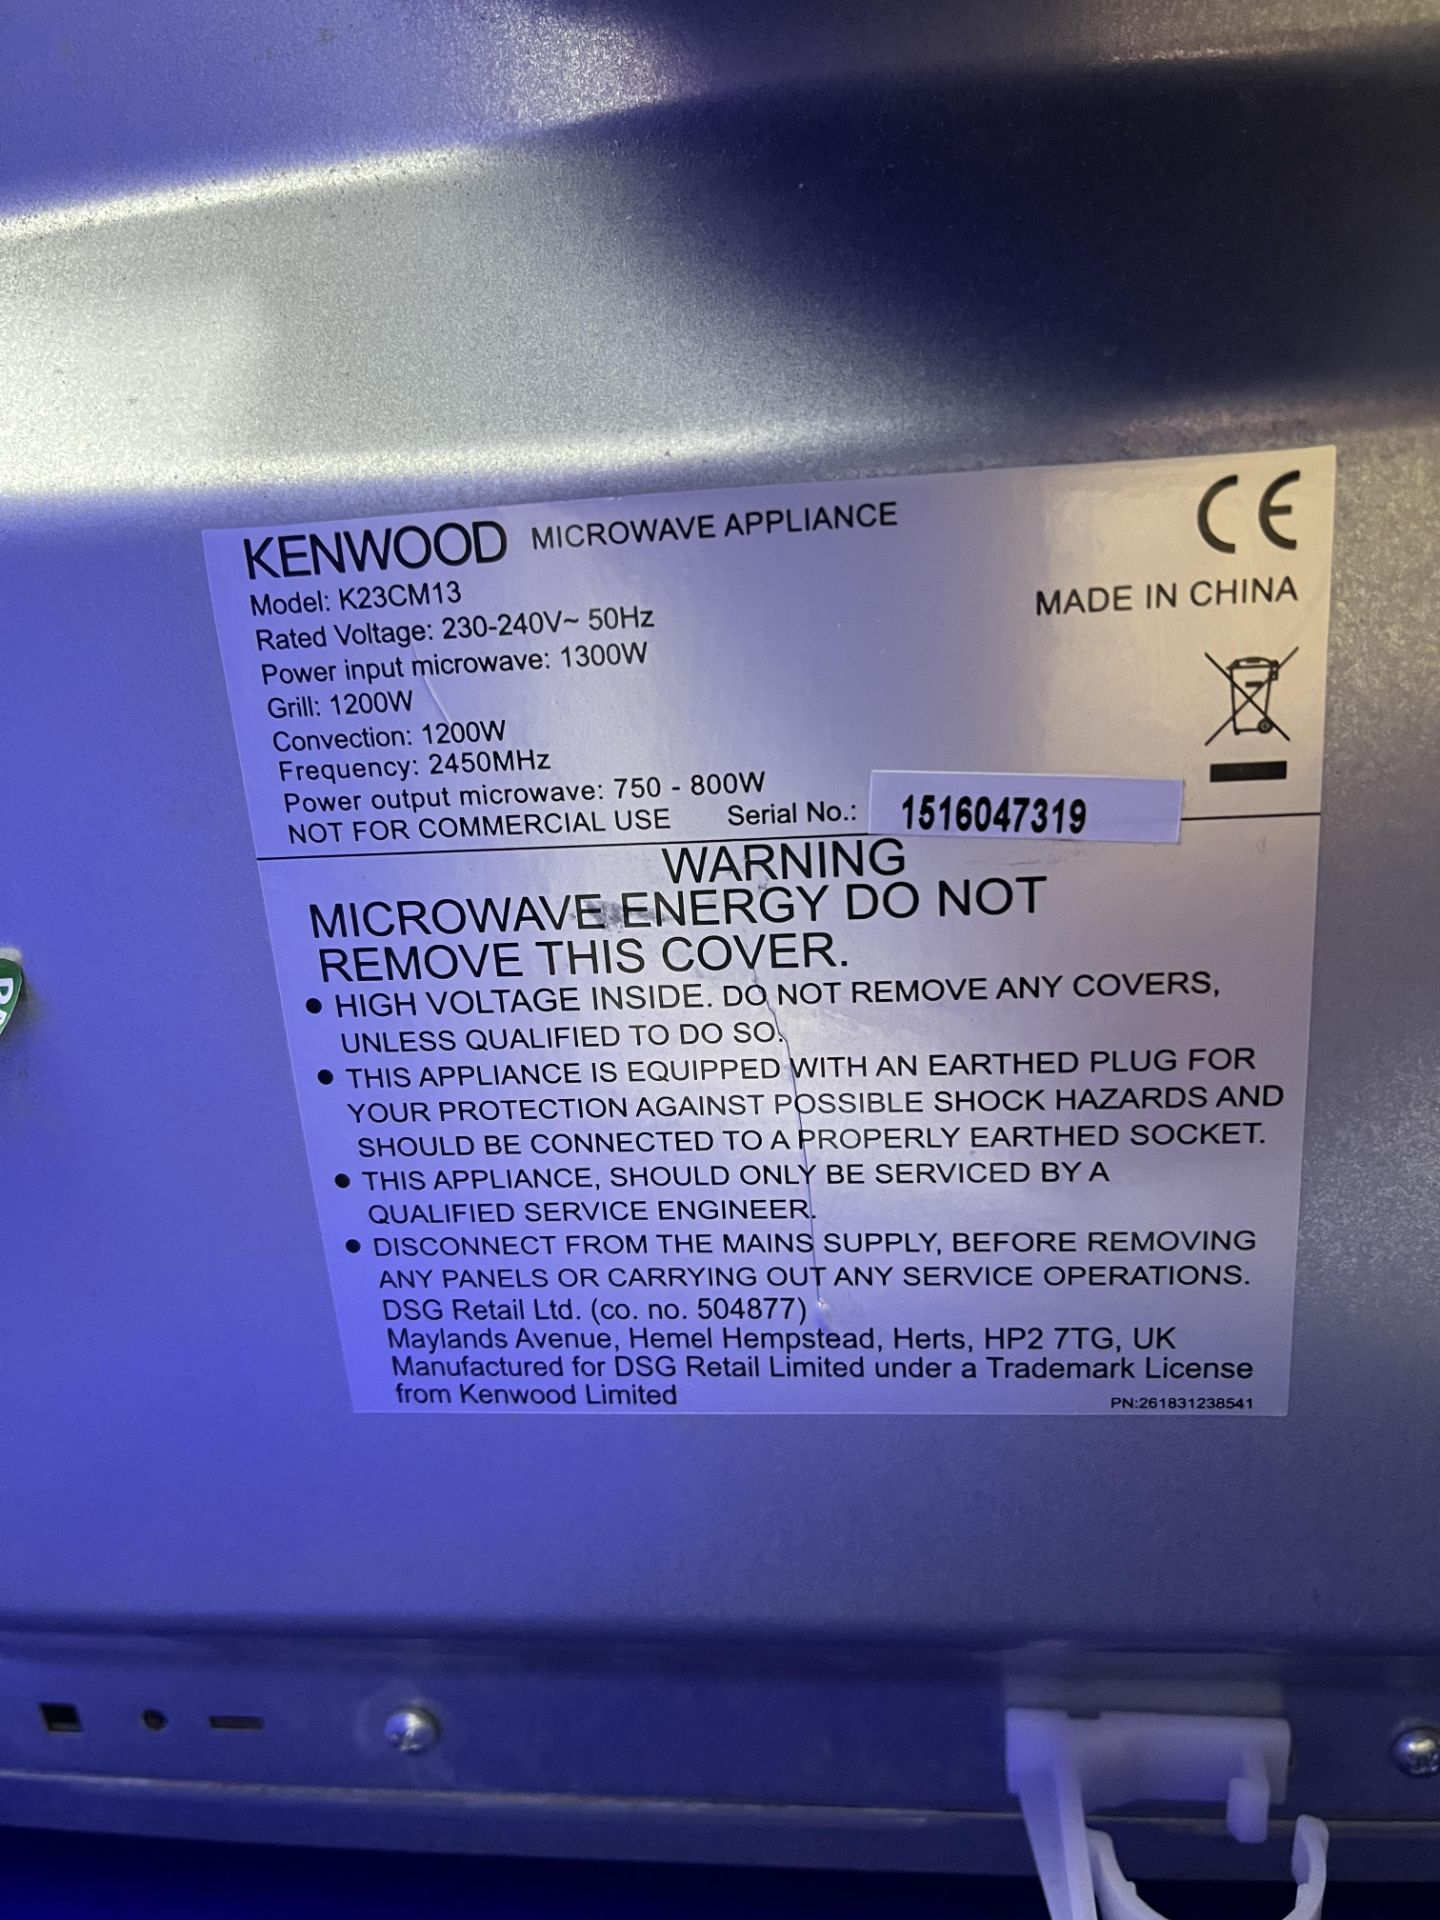 Kenwood Microwave - Image 4 of 4